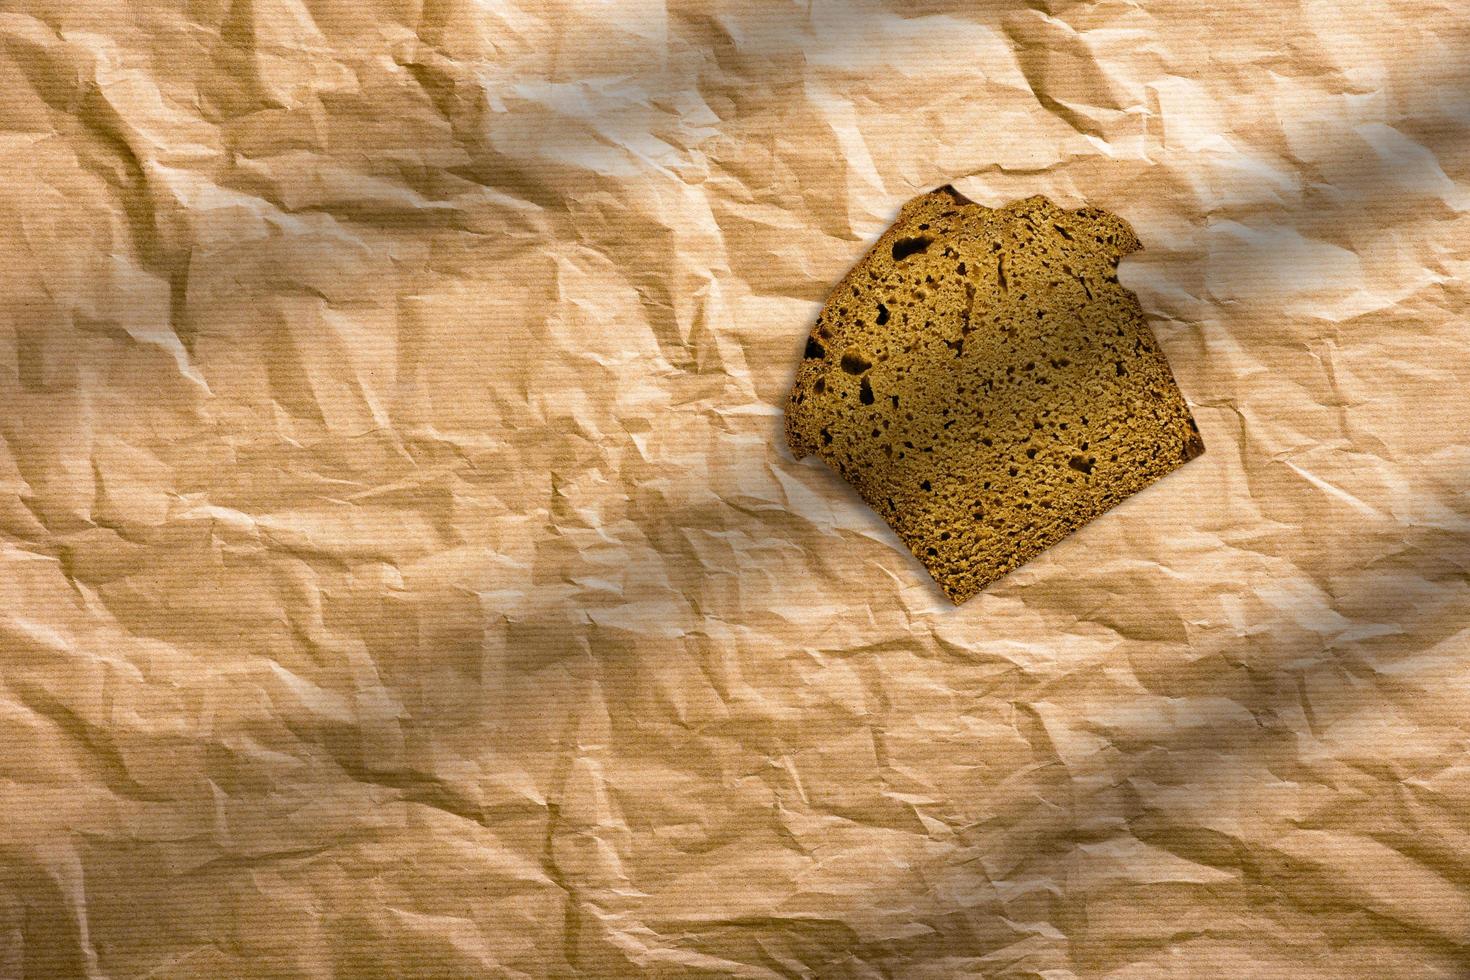 pain de seigle tranché sur un fond marron isolé. tranches de pain brun enveloppées dans du papier brun. photo